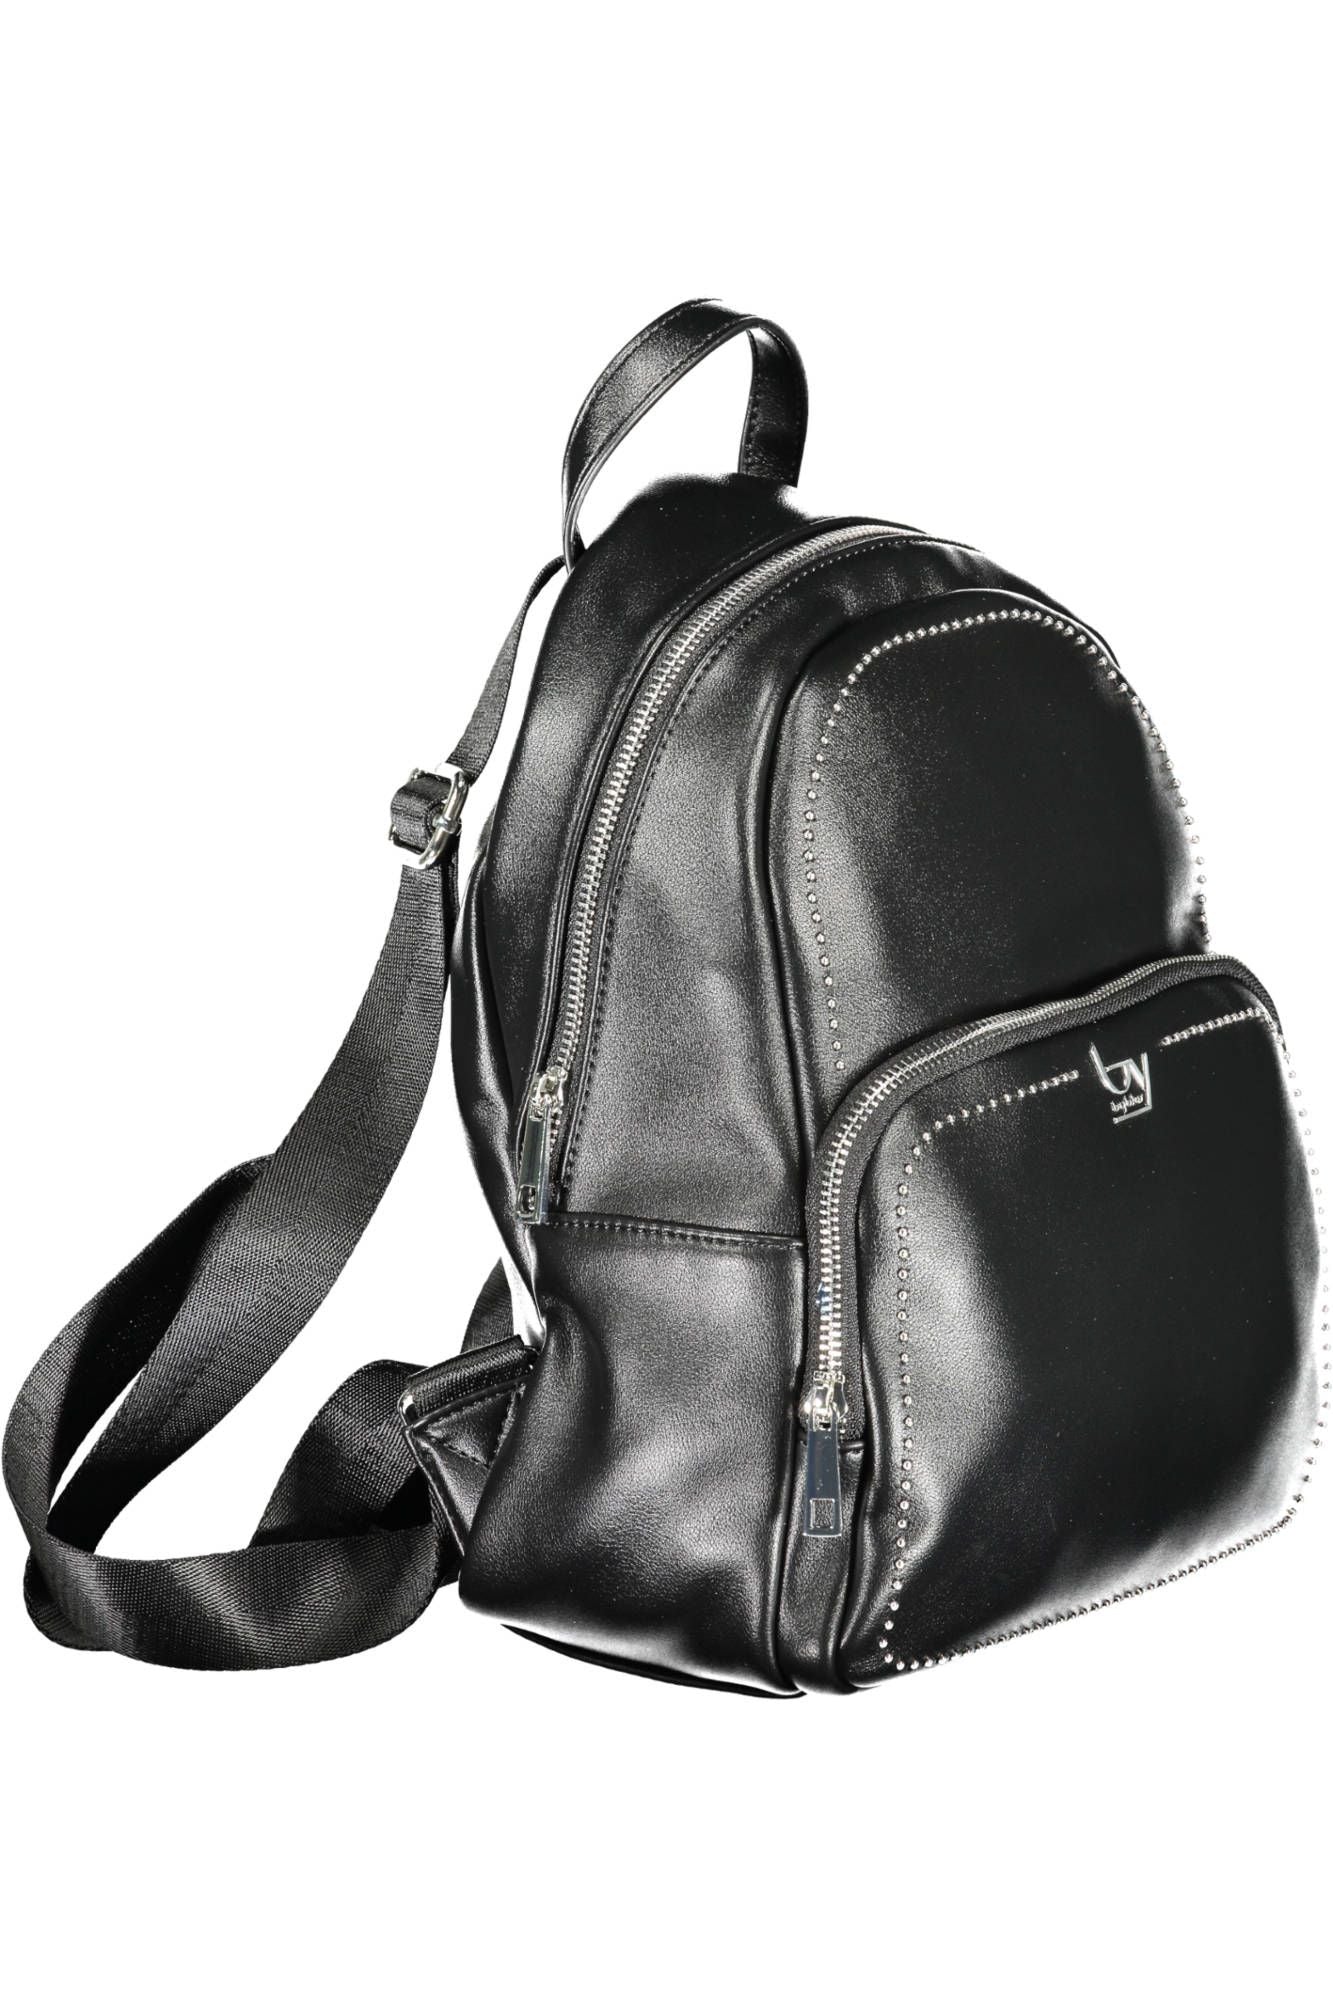 Elegant Designer Black Backpack with Contrasting Details